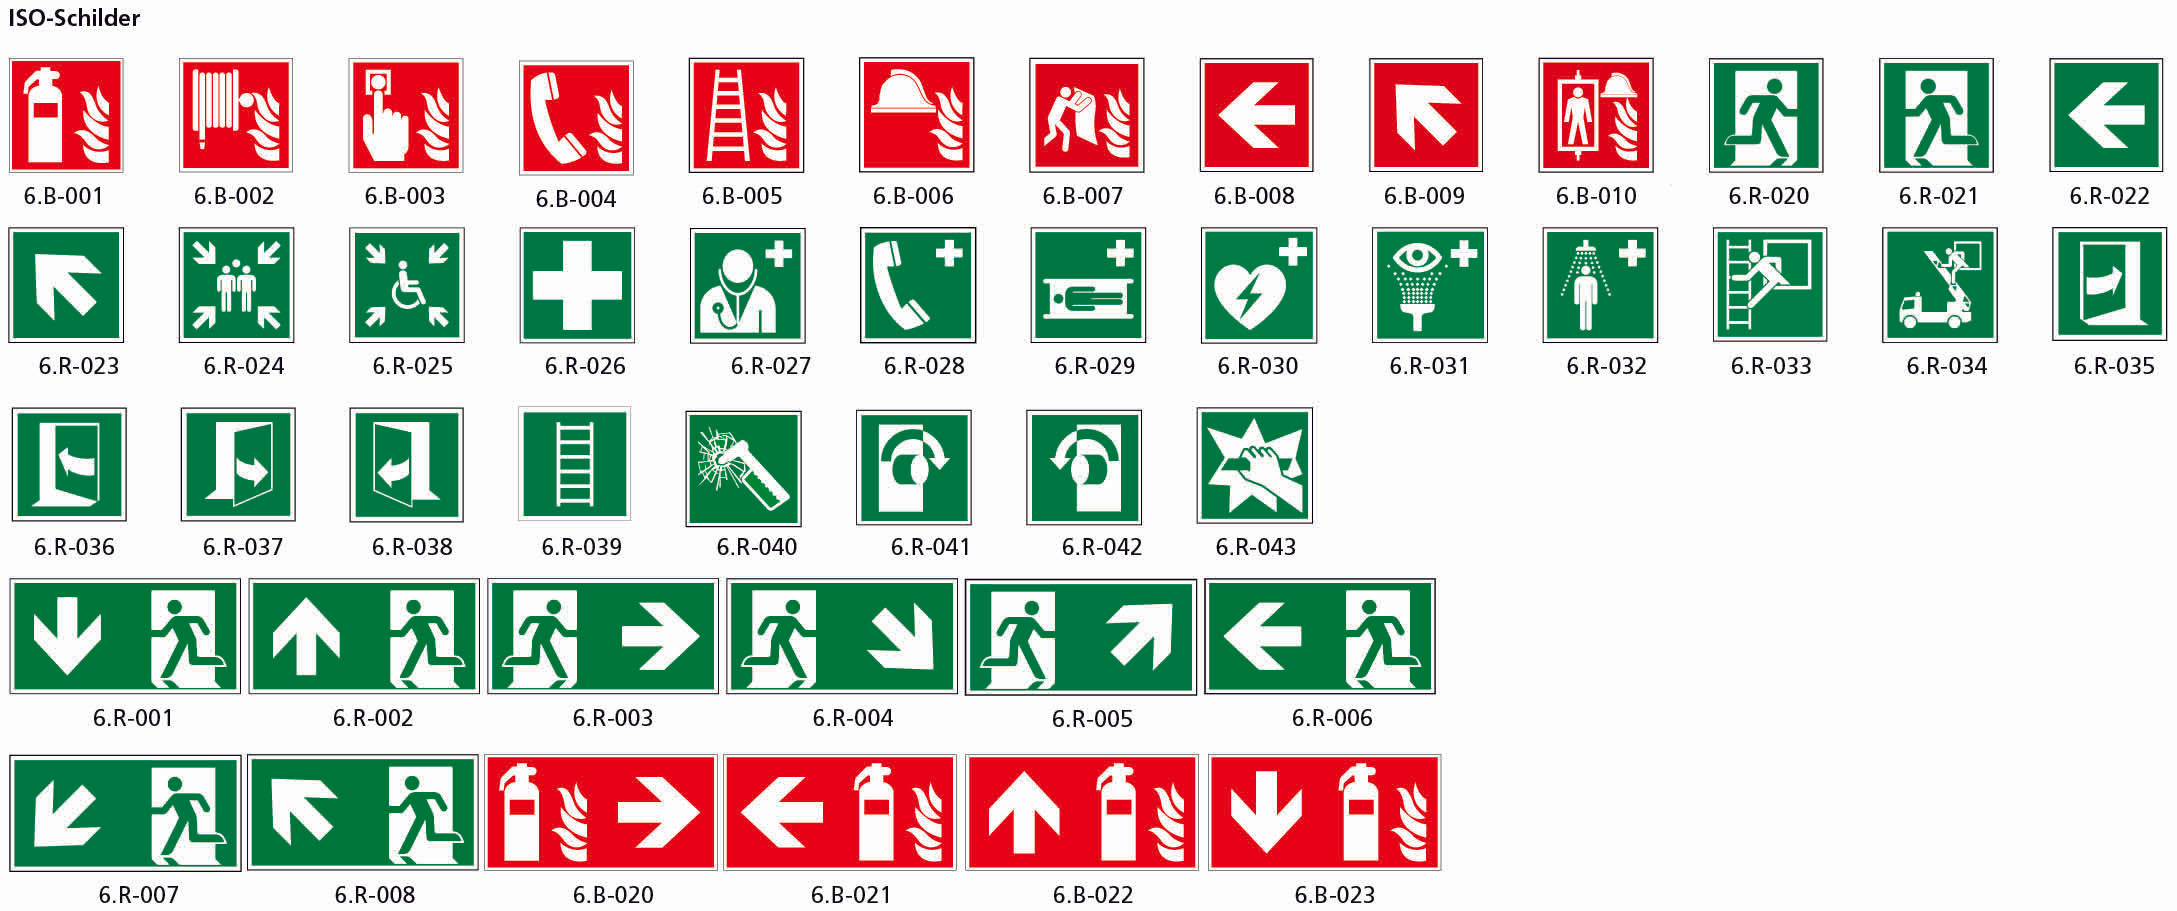 Fahnenschild doppelseitig, Rettungs- und Brandschutzzeichen, KU, 150 x 150 mm, gemäss Logobibliothek